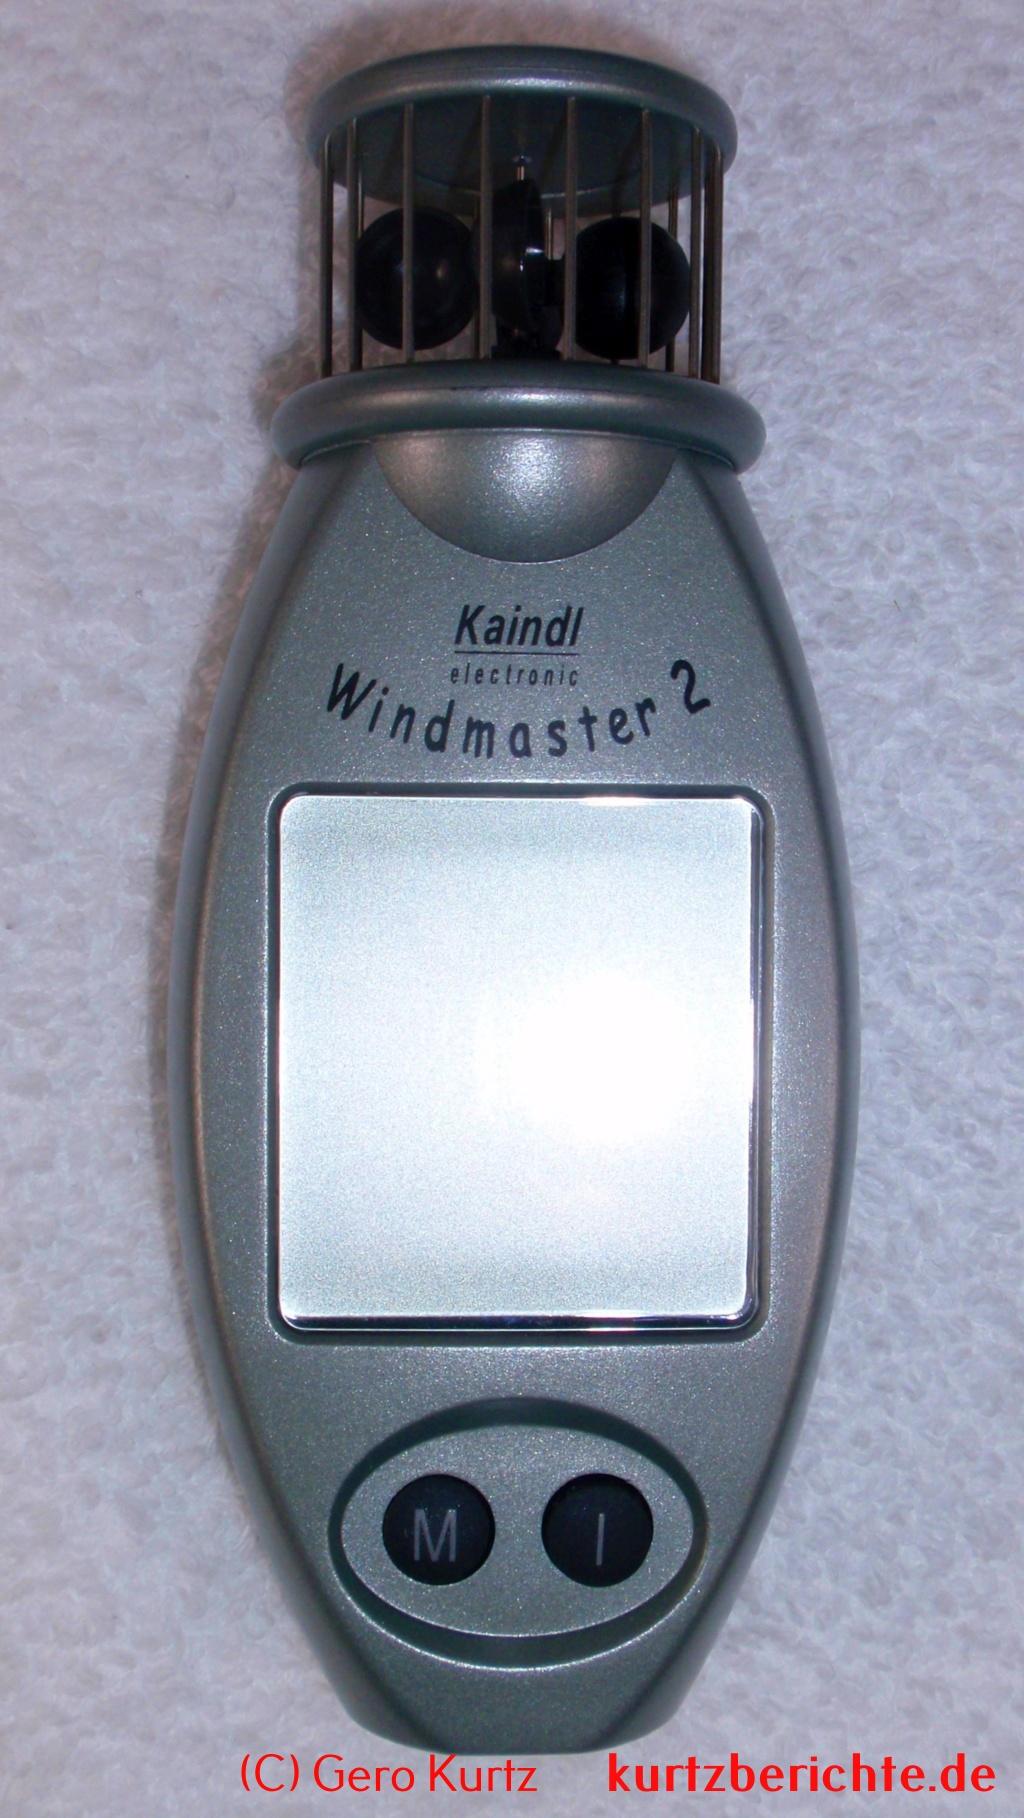 Kaindl Windmaster 2 - Draufsicht auf das Gerät